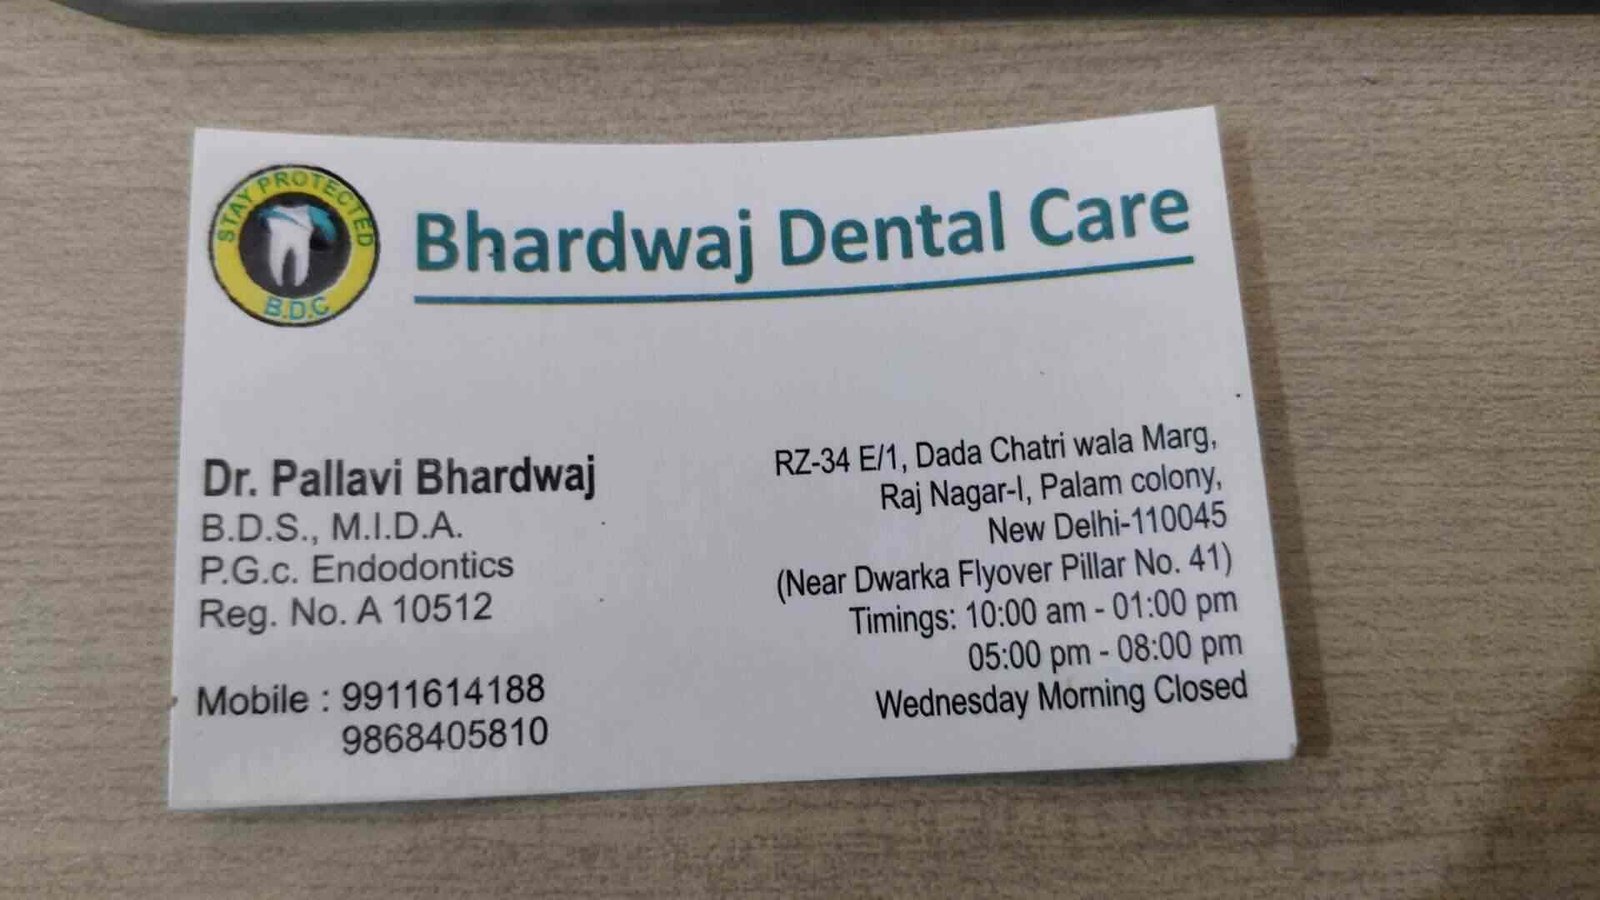  Bhardwaj Dental Care